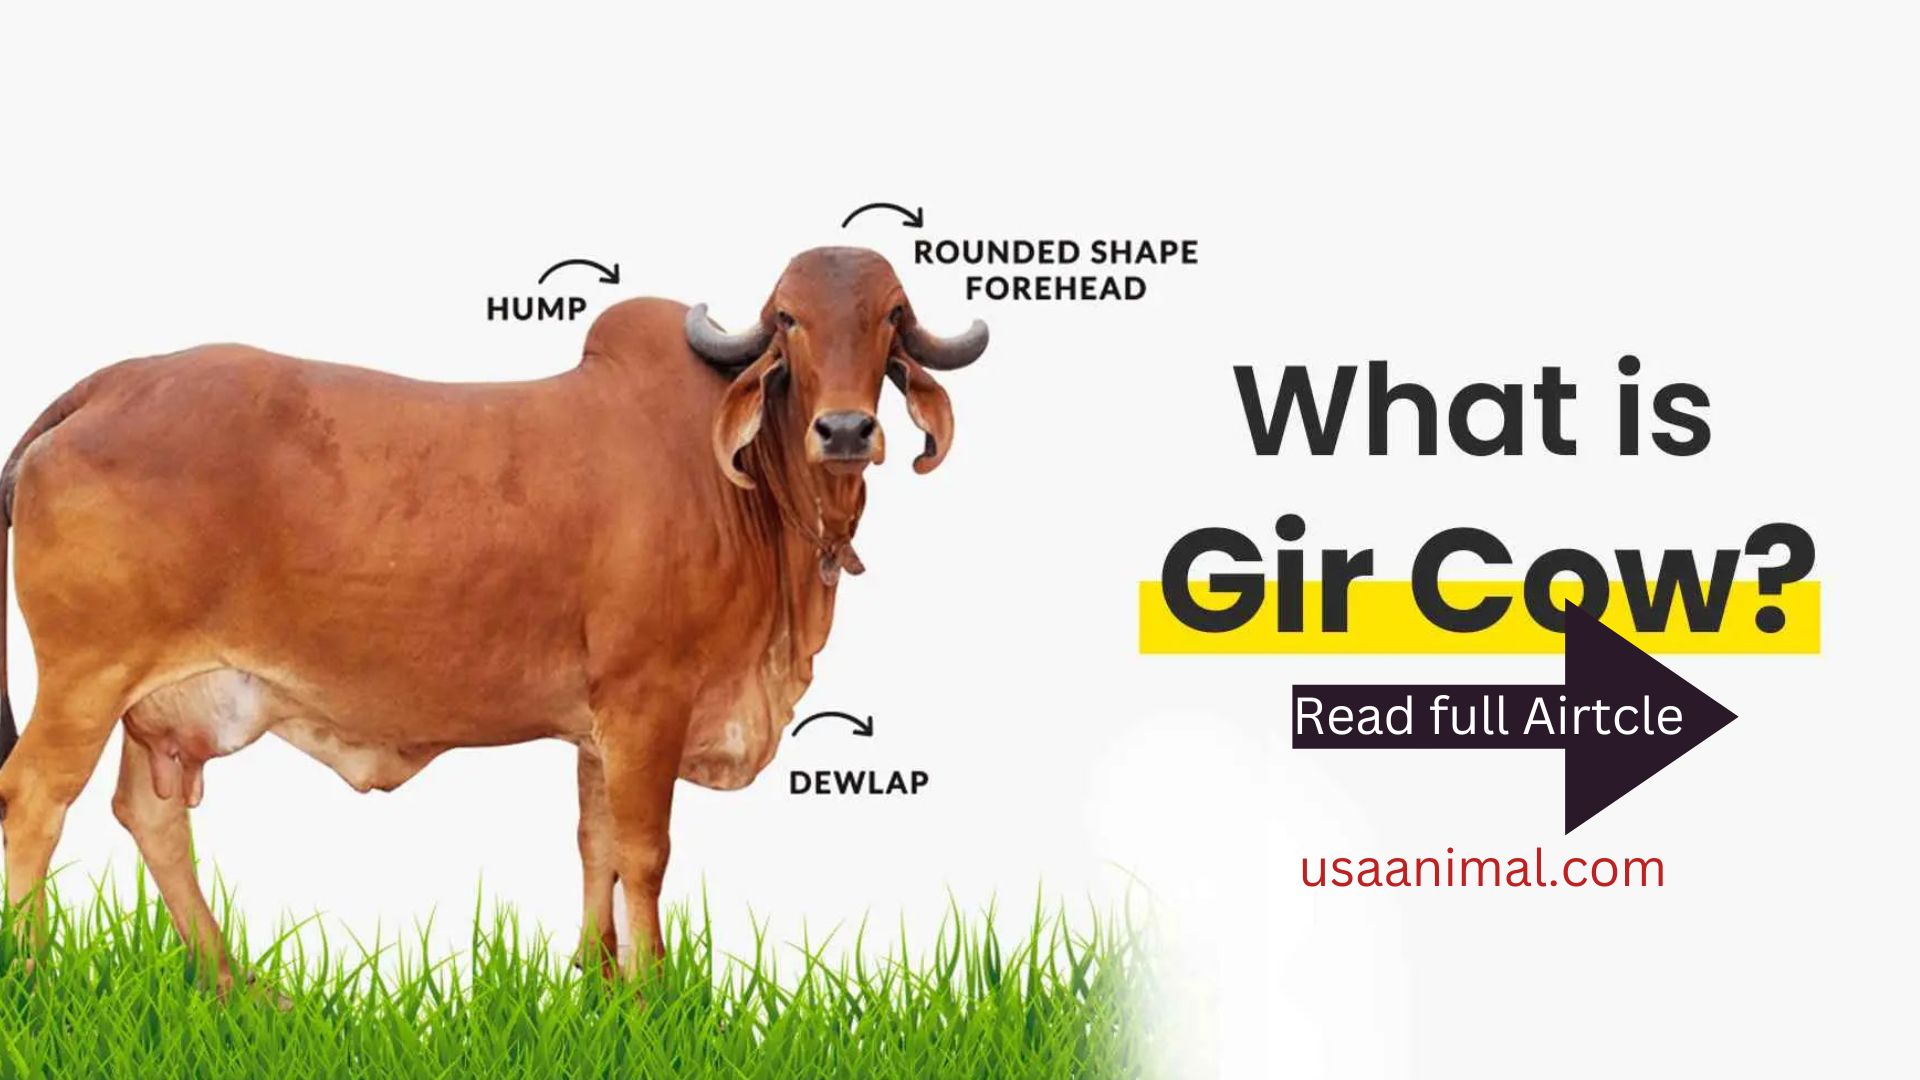 Gir cow